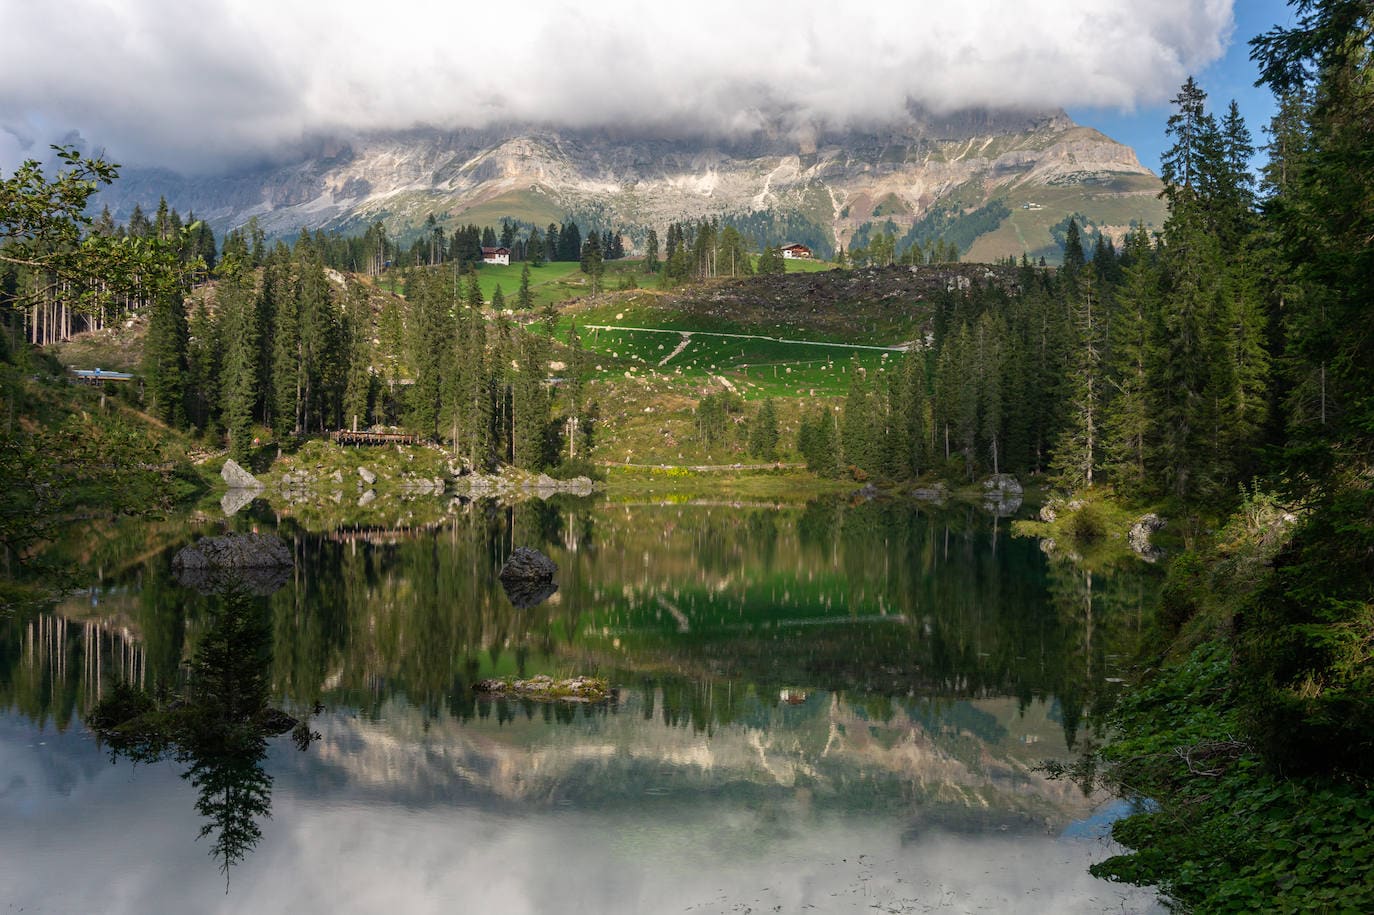 Lago de Carezza (Trentino-Alto Adigio), 108 456 menciones. Las laderas del macizo del Latemar, perteneciente al grupo montañoso de las Dolomitas, se reflejan en este lago alpino, situado a pocos kilómetros de Bolzano; de ahí que sean muchos los que se refieran a él como «el espejo de las Dolomitas». Es uno de los lugares de visita obligada en la región de Trentino-Alto Adigio. Es importante recordar que el Lago de Carezza es un área protegida, y por lo tanto no está permitido bañarse en sus aguas. Pero en la zona existen numerosas rutas de senderismo.